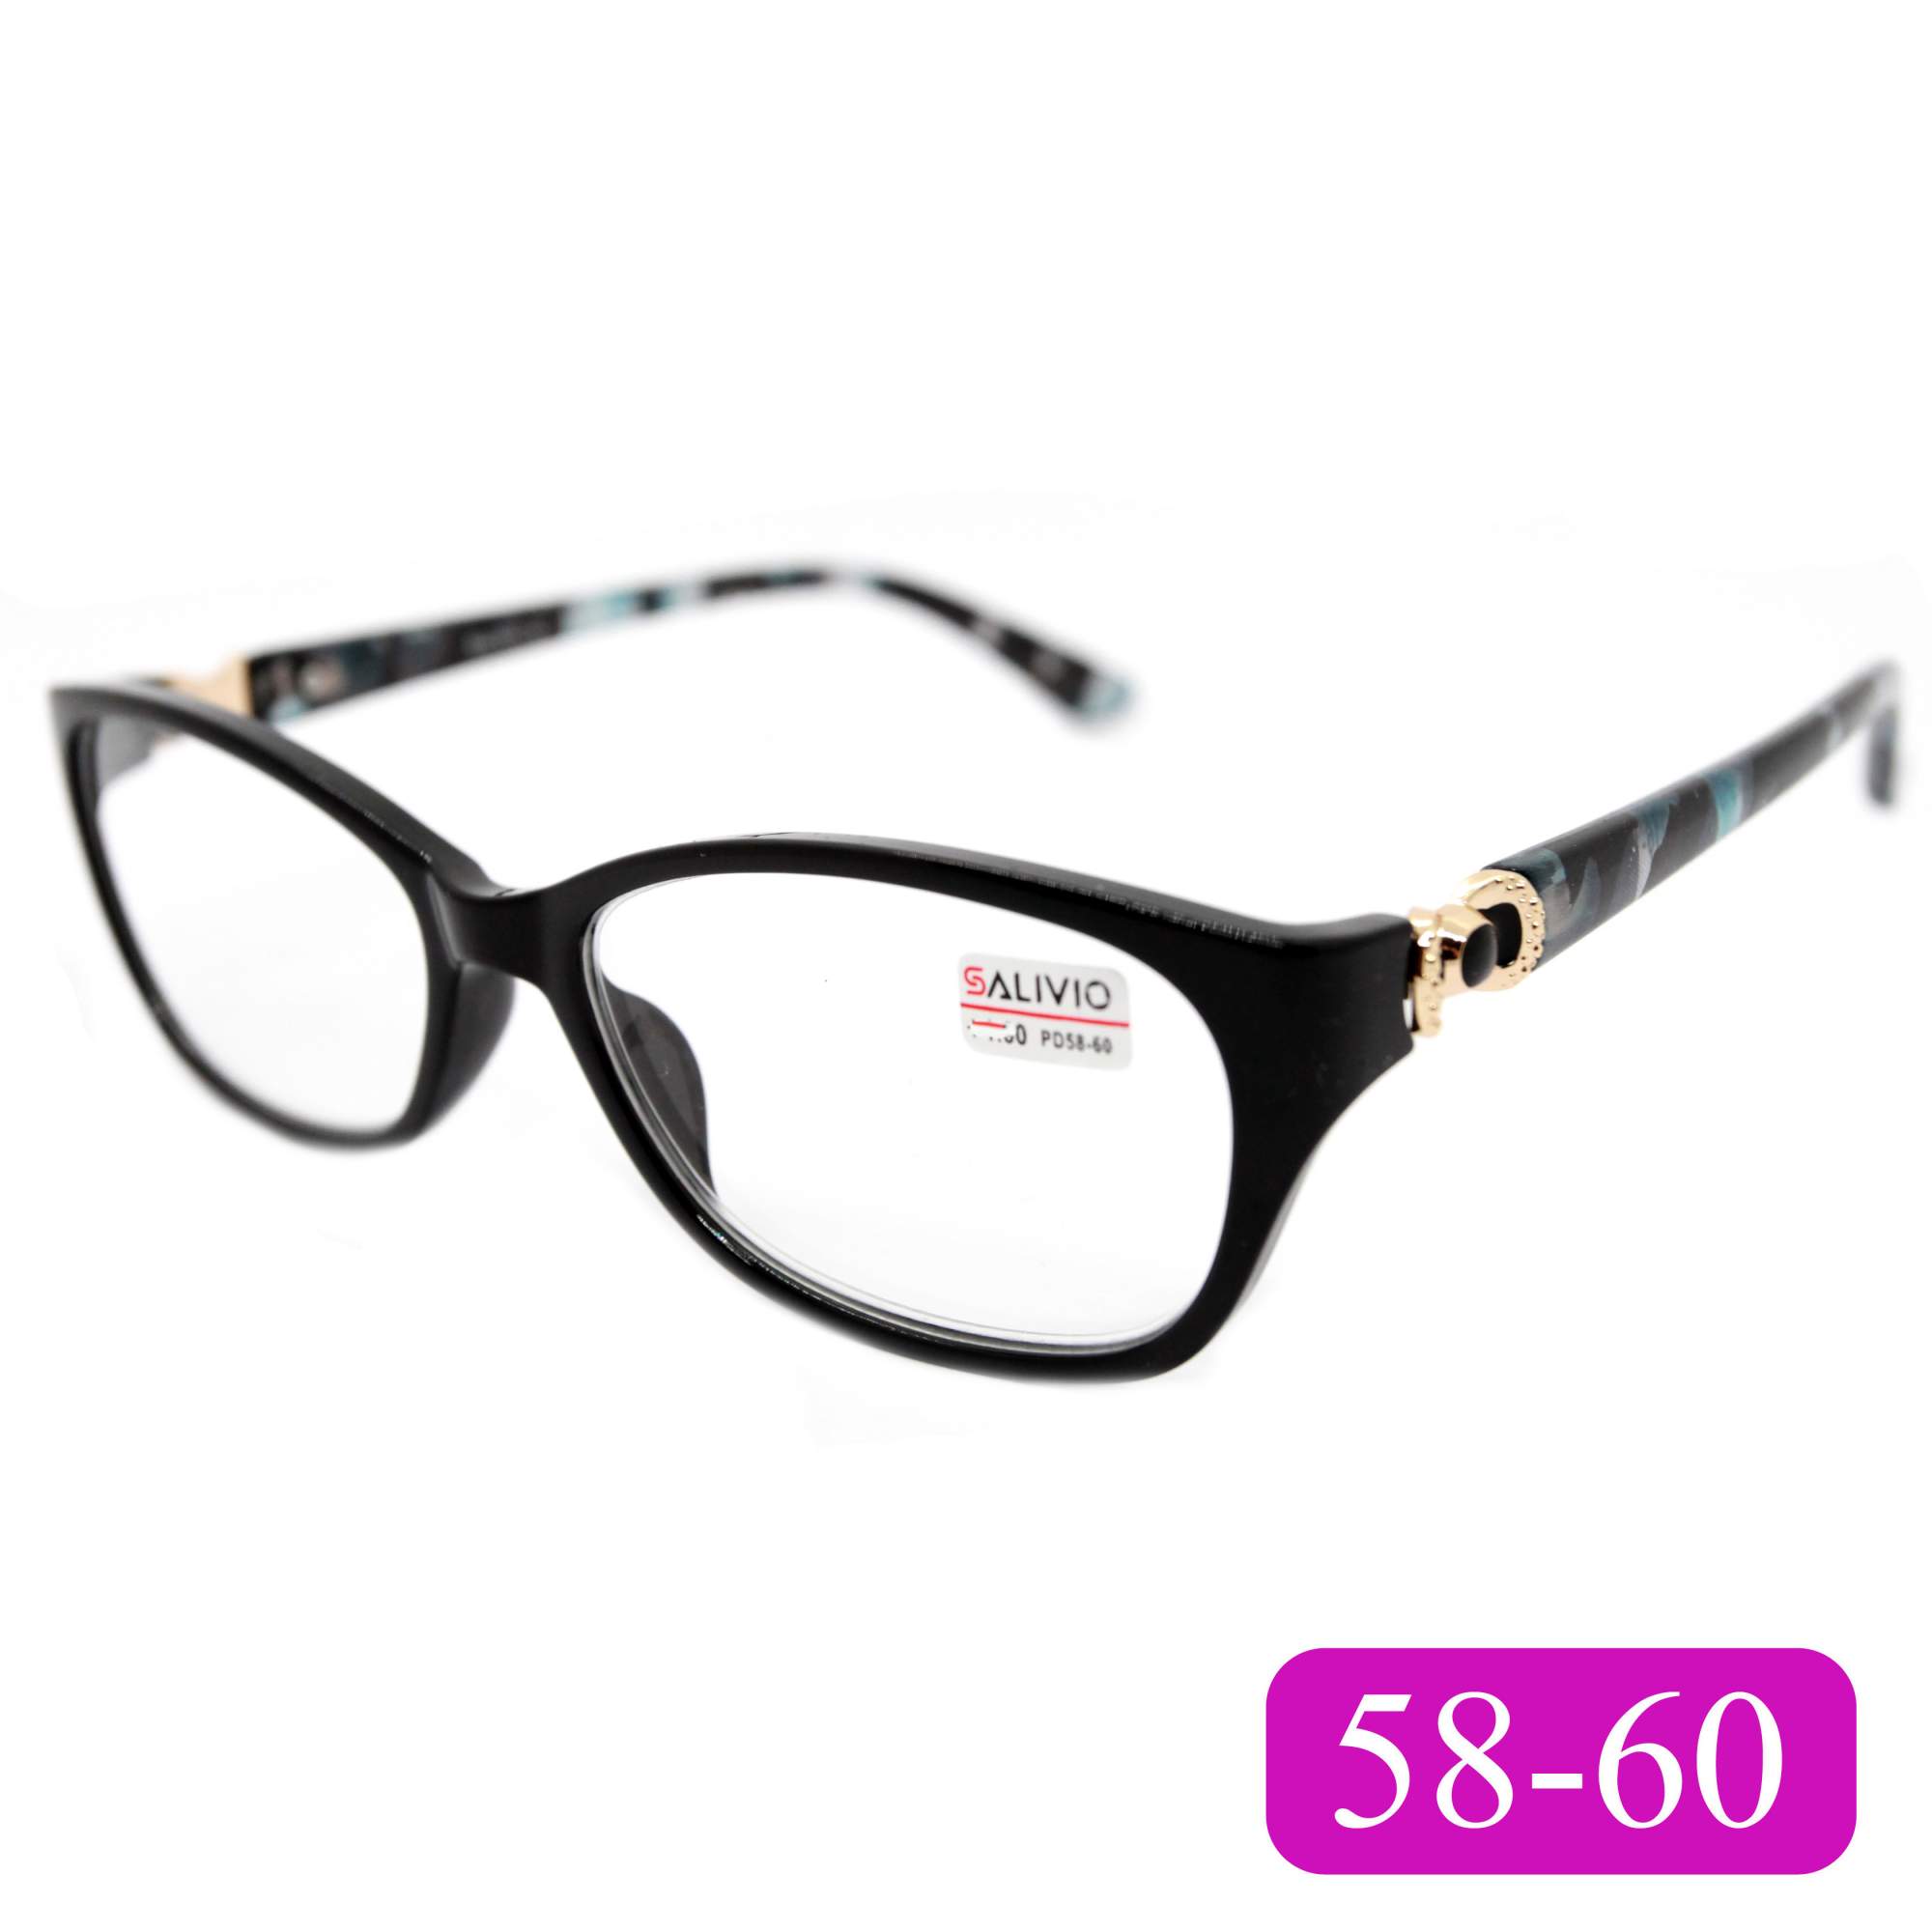 Готовые очки для чтения Salivio 0045 +1,00, без футляра, цвет черный, РЦ 58-60